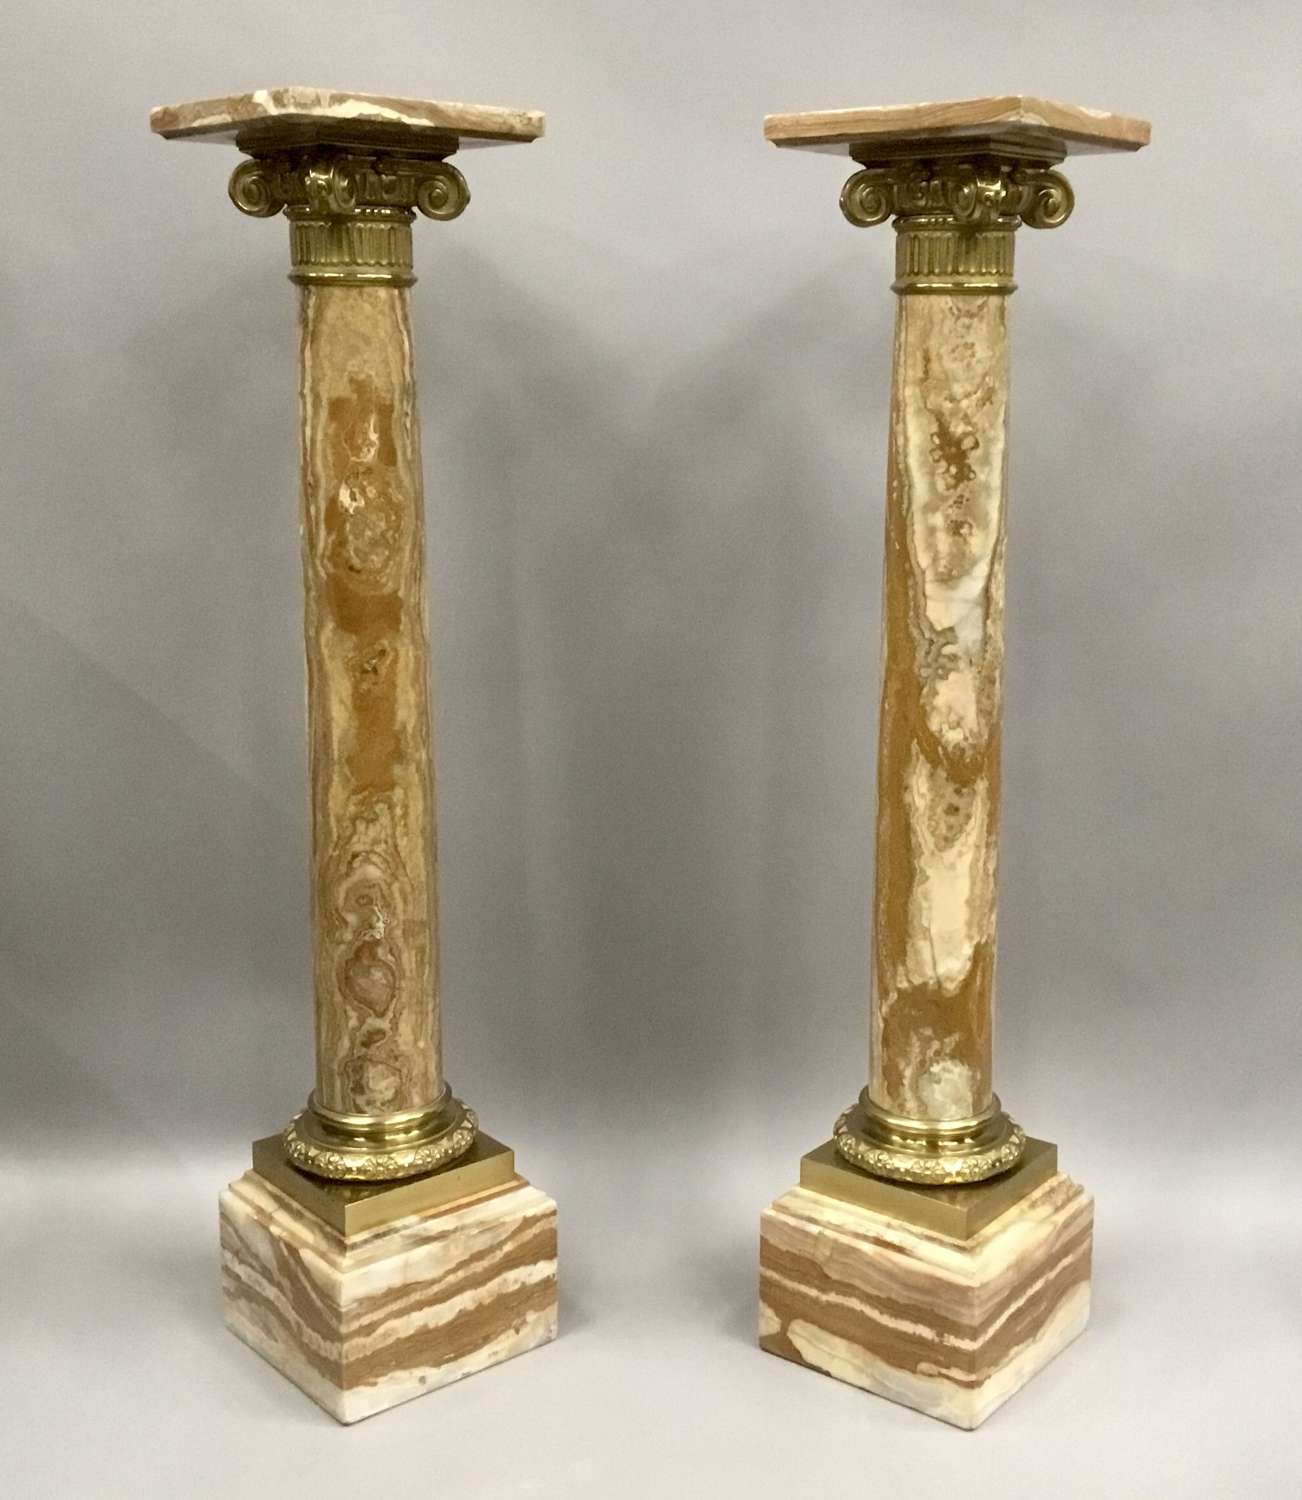 A splendid C19th pair of marble and ormolu pedestal columns